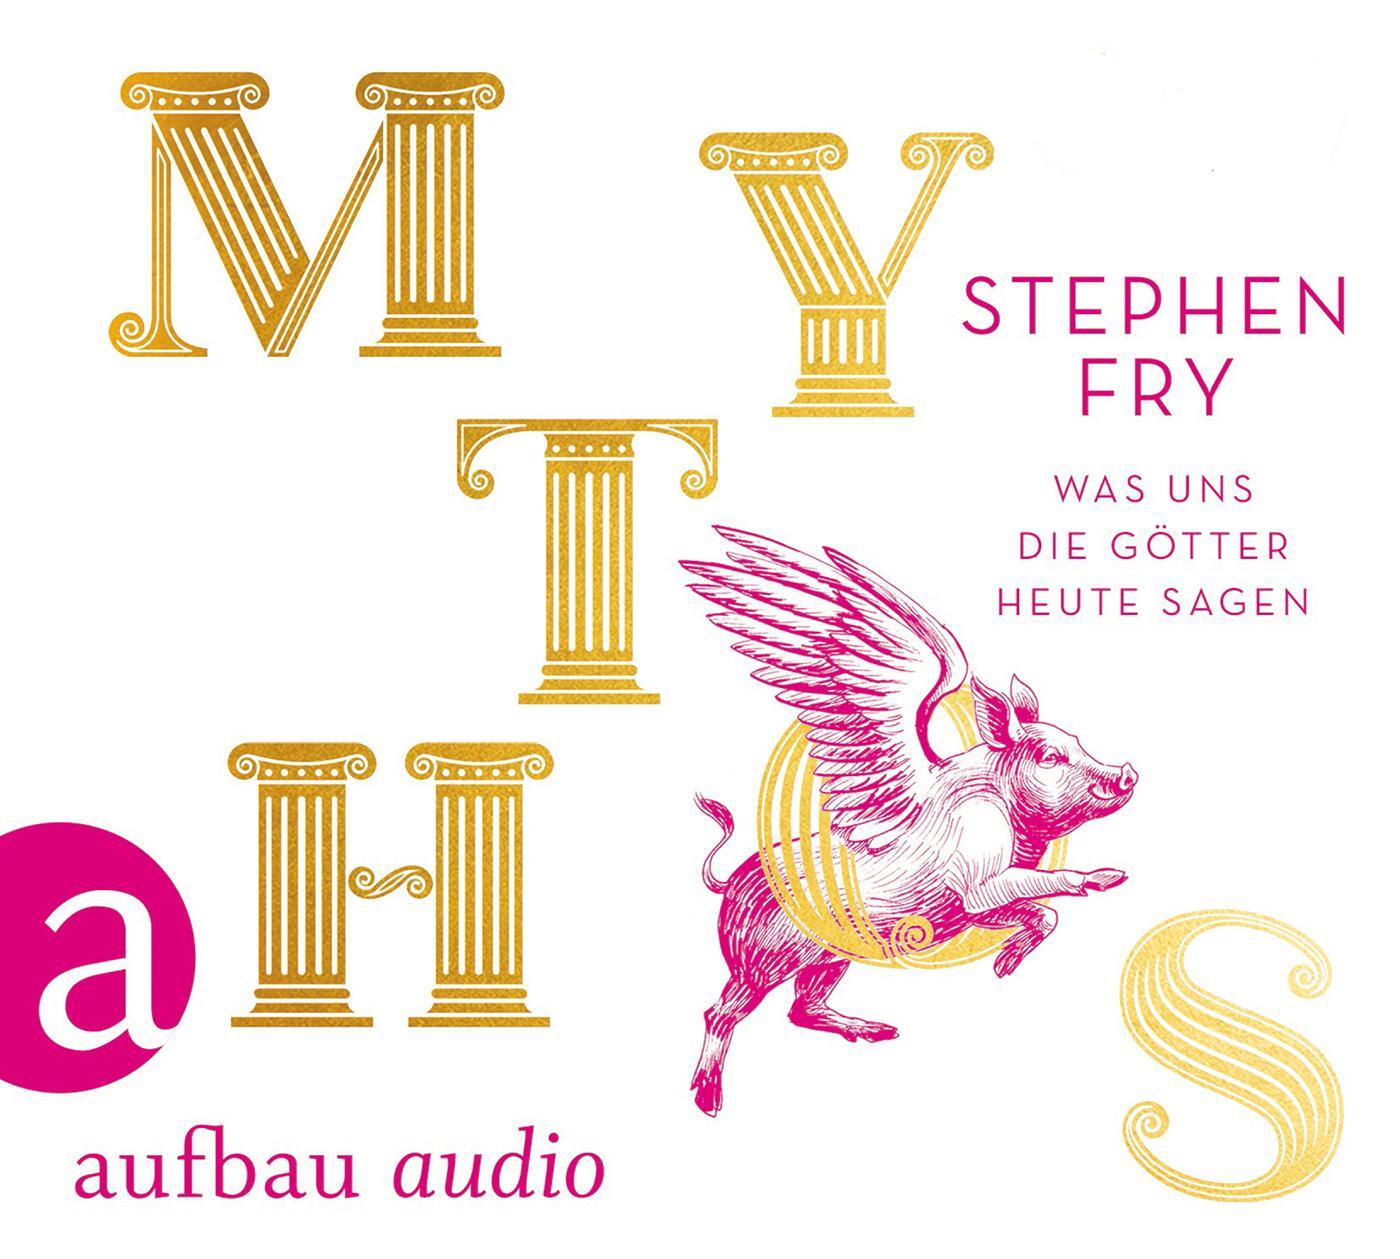 Mythos - Fry, Stephen